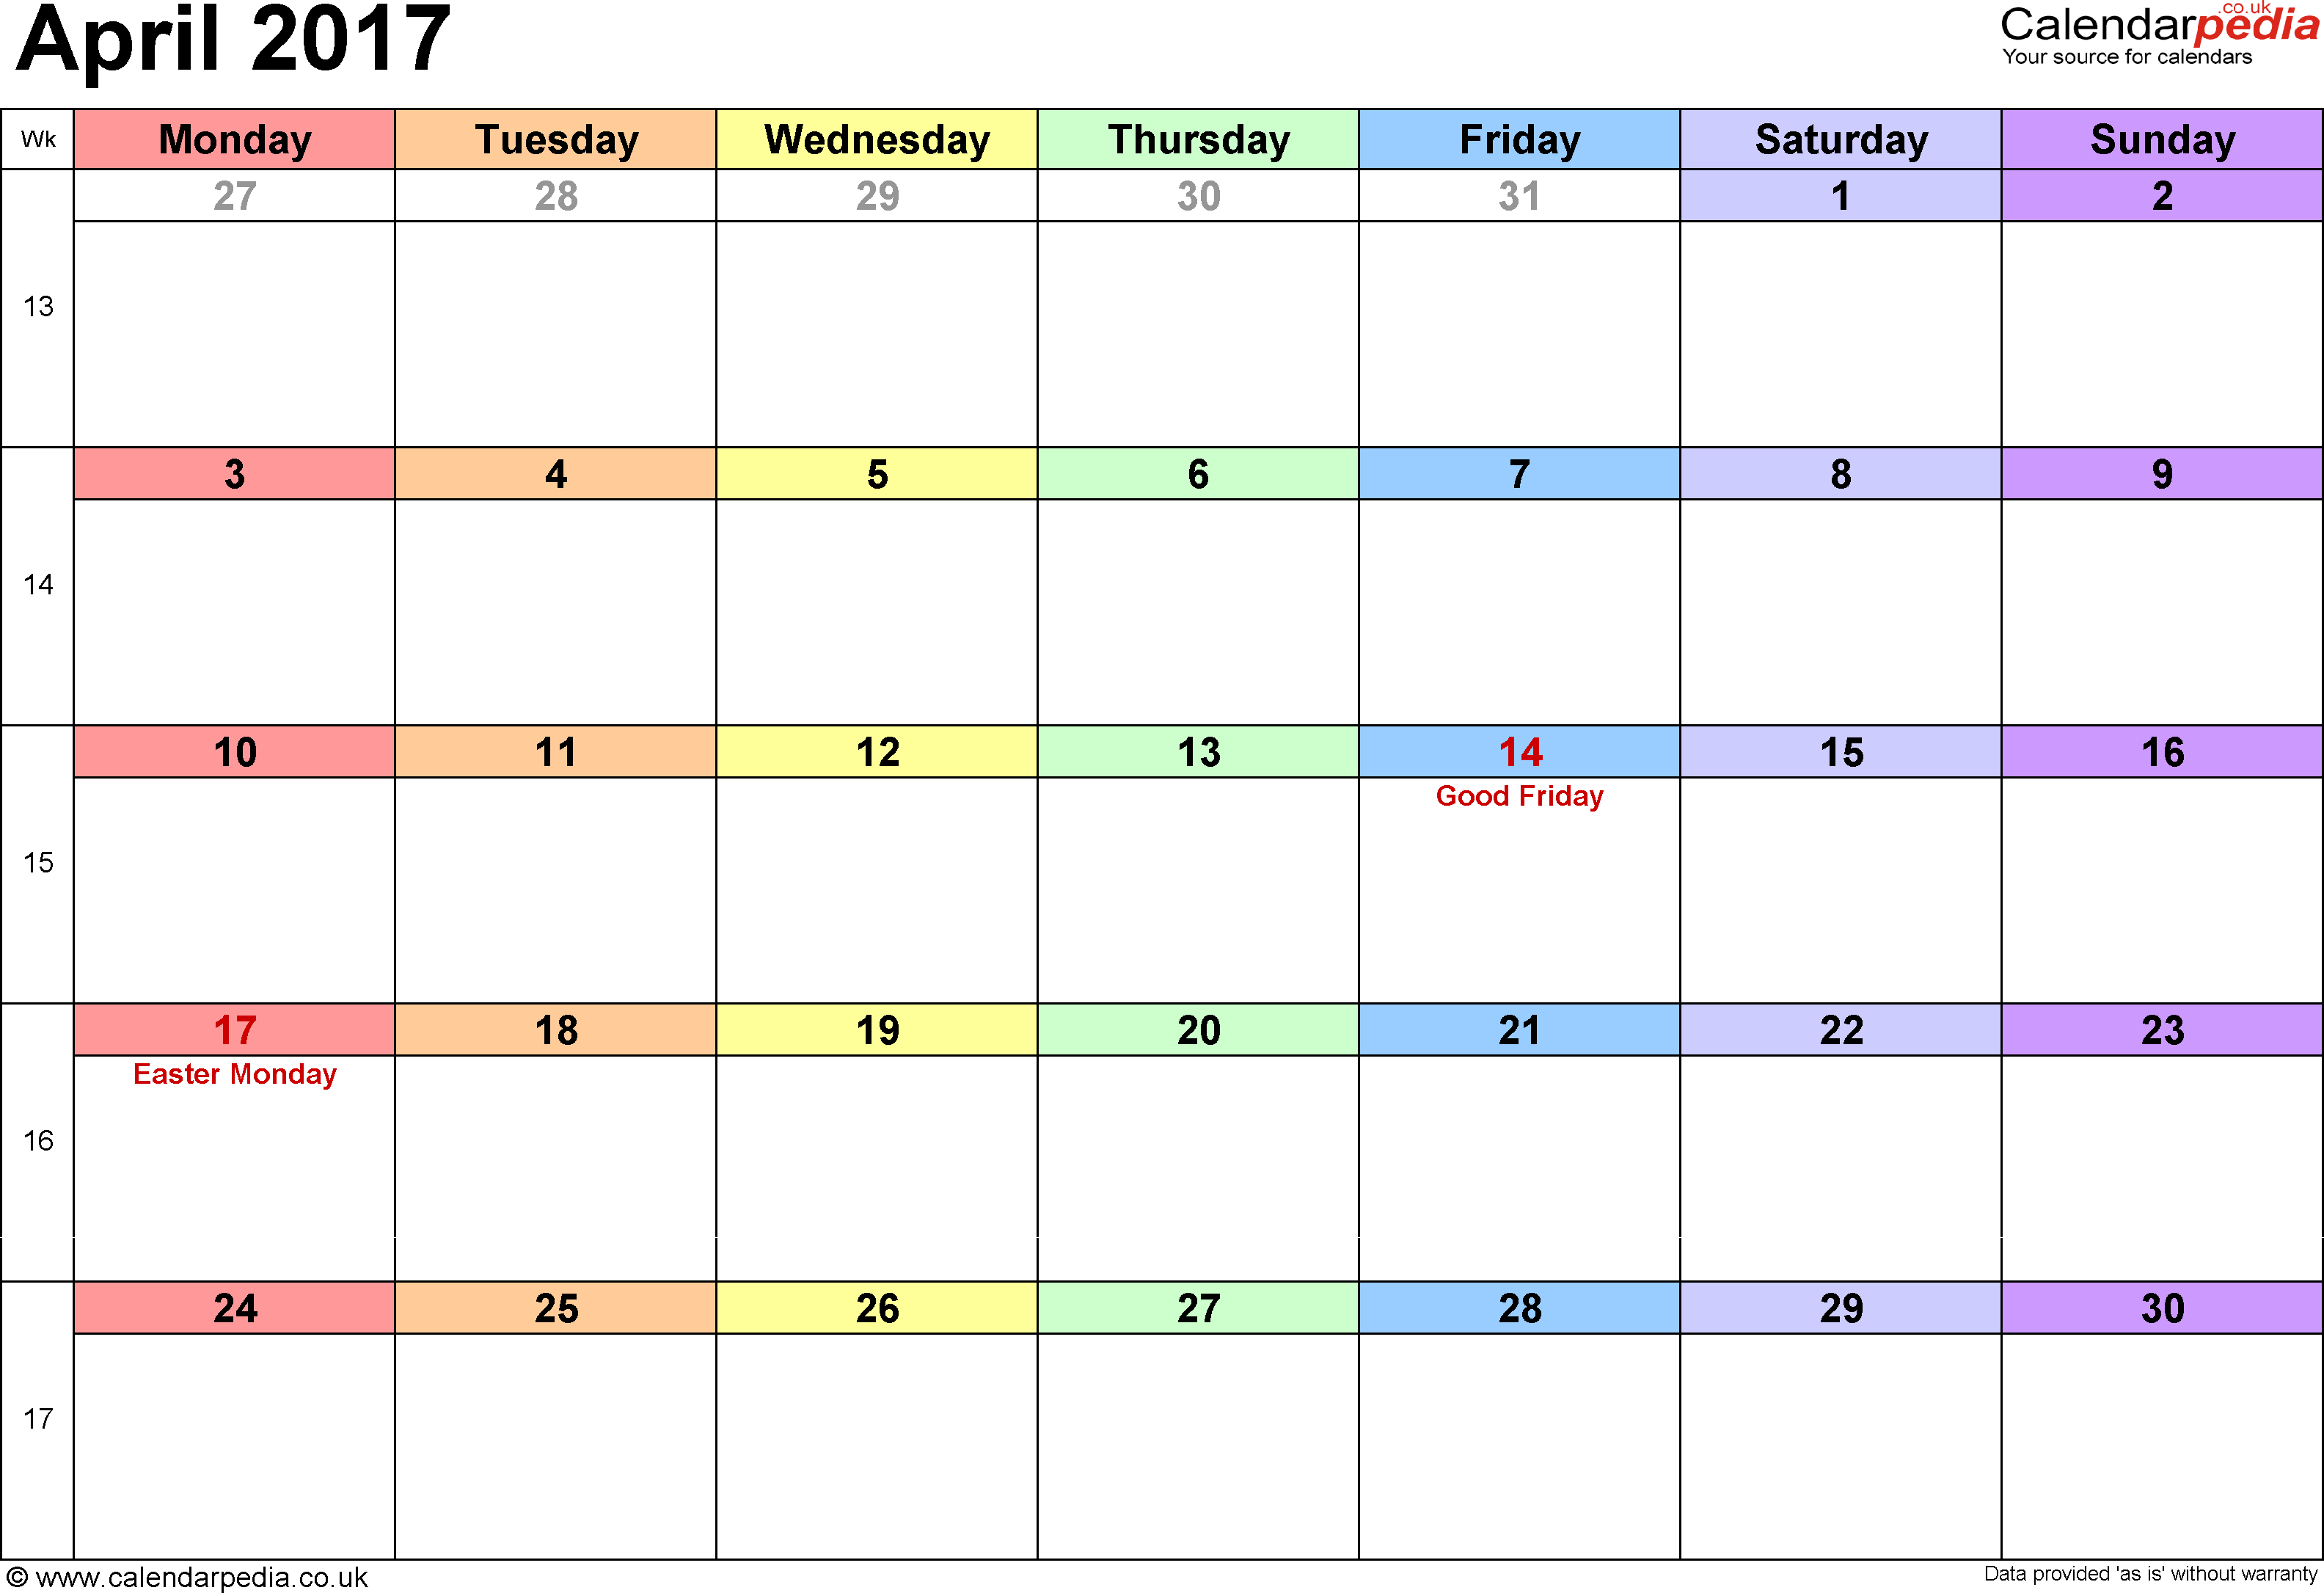 Calendar April 2017 UK, Bank Holidays, Excel/PDF/Word Templates